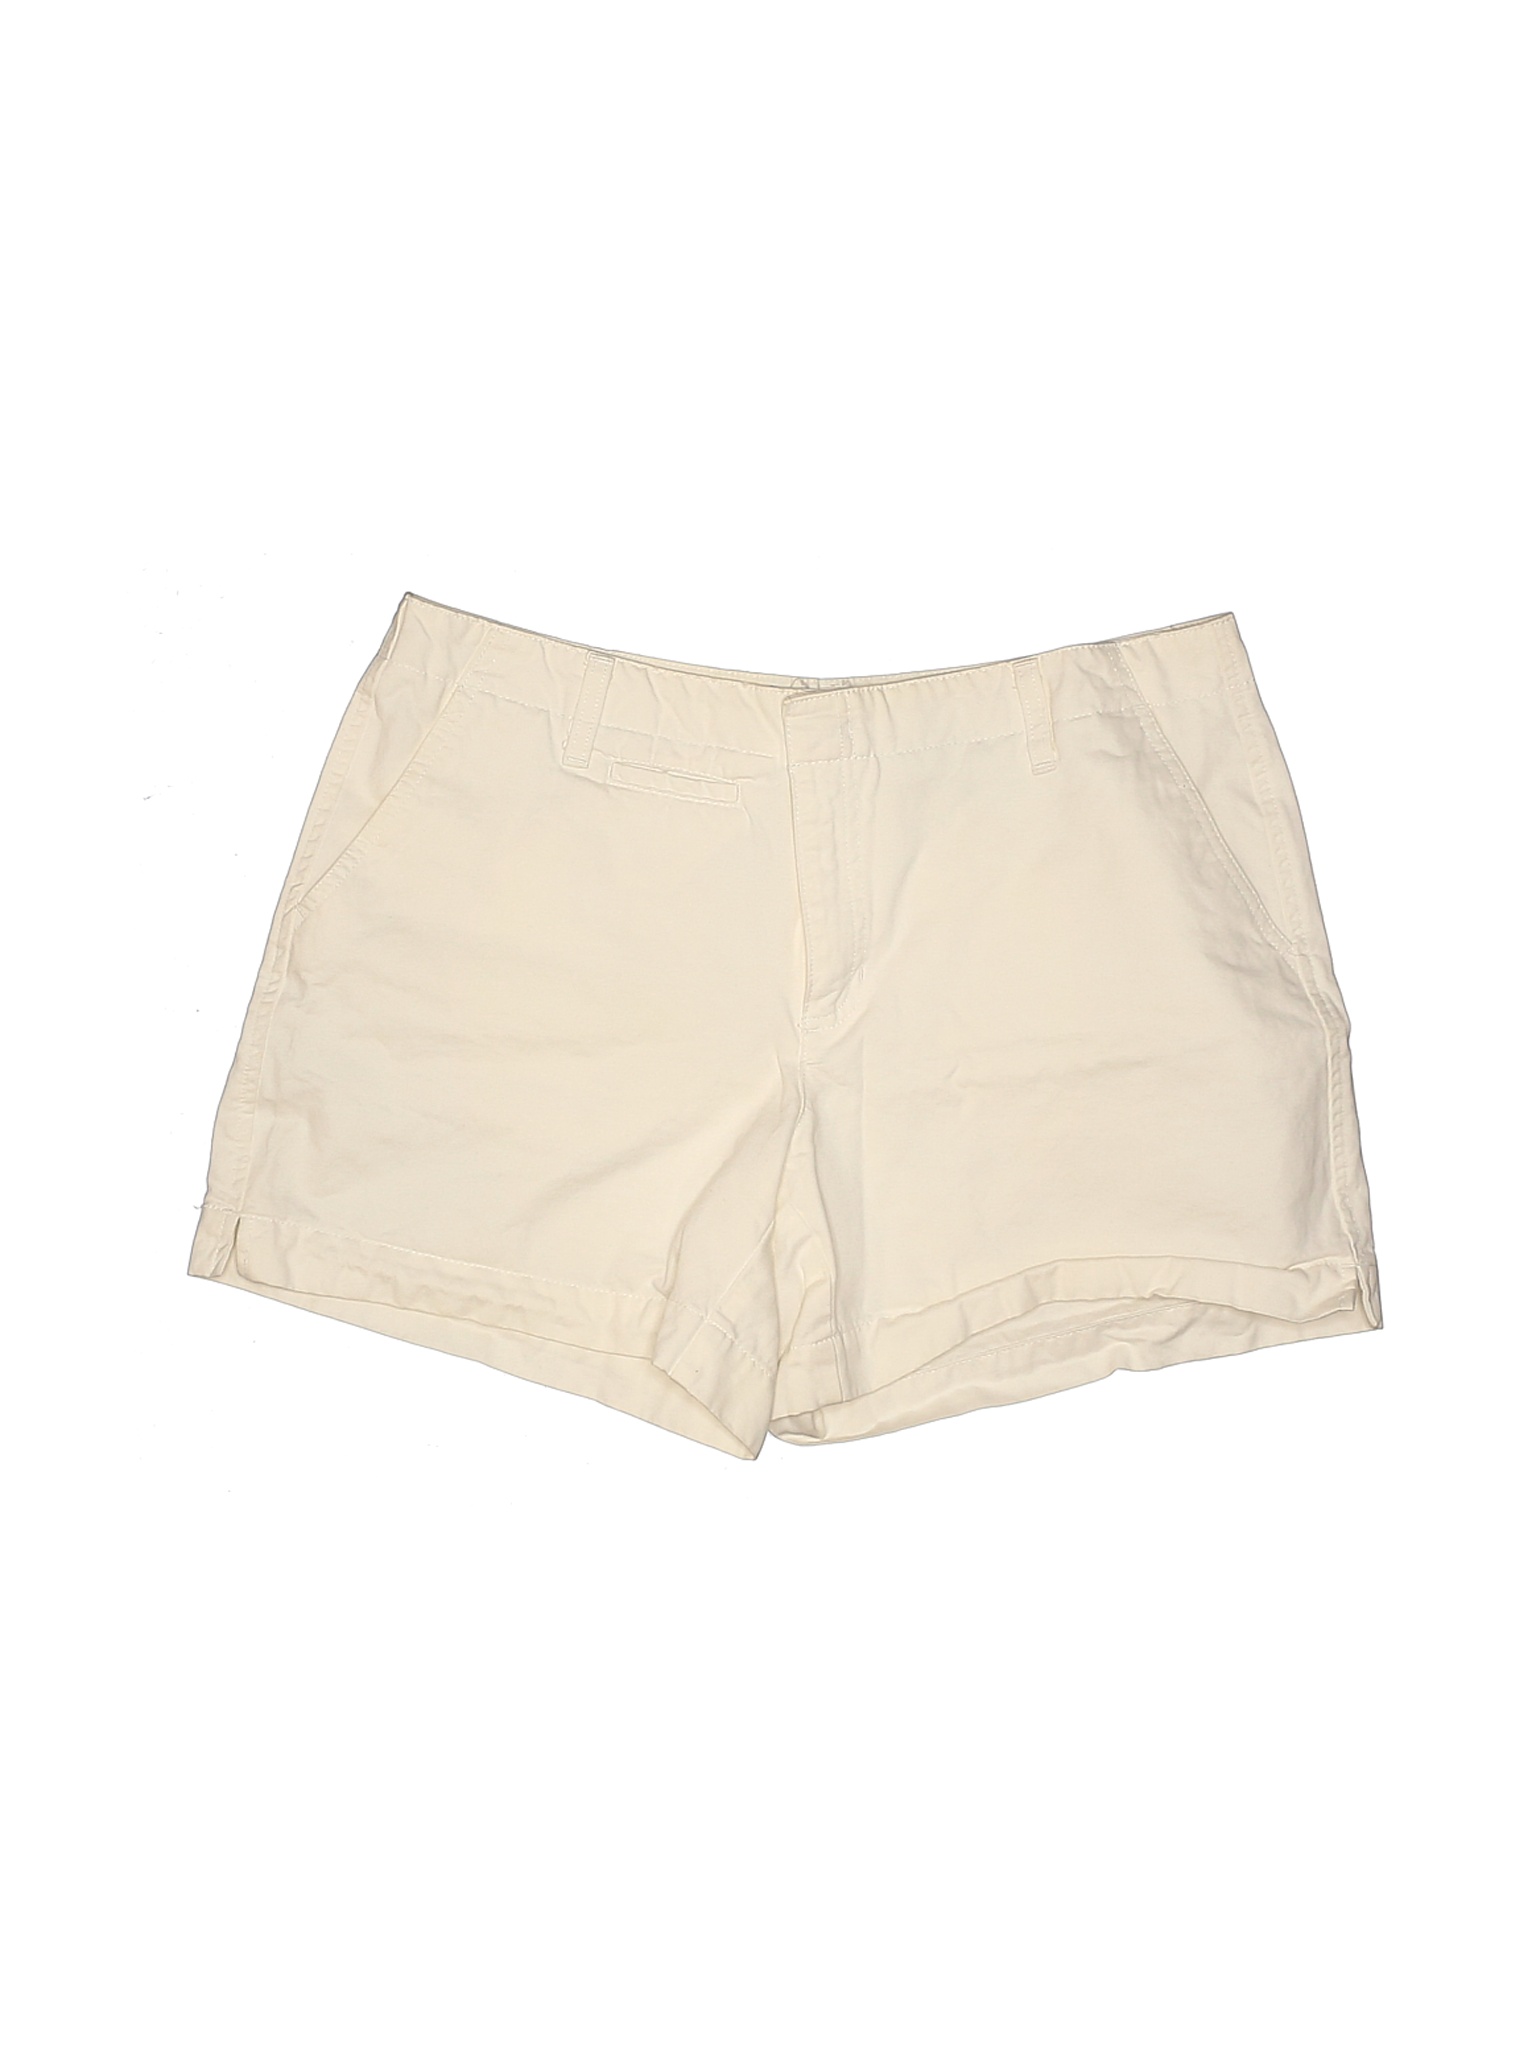 Old Navy Women Ivory Khaki Shorts 10 | eBay